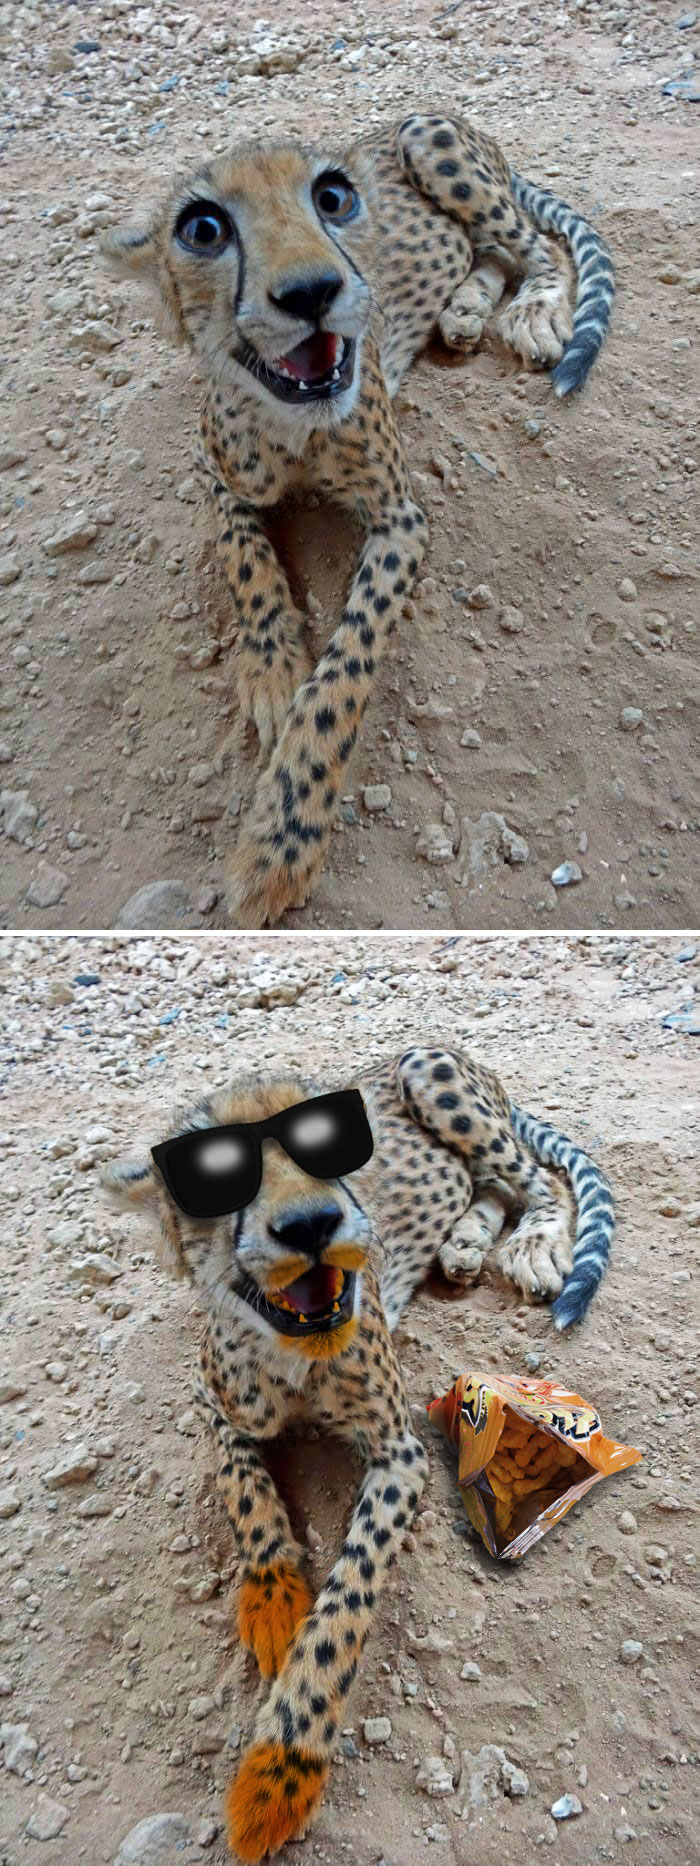 This Cheerful Cheetah